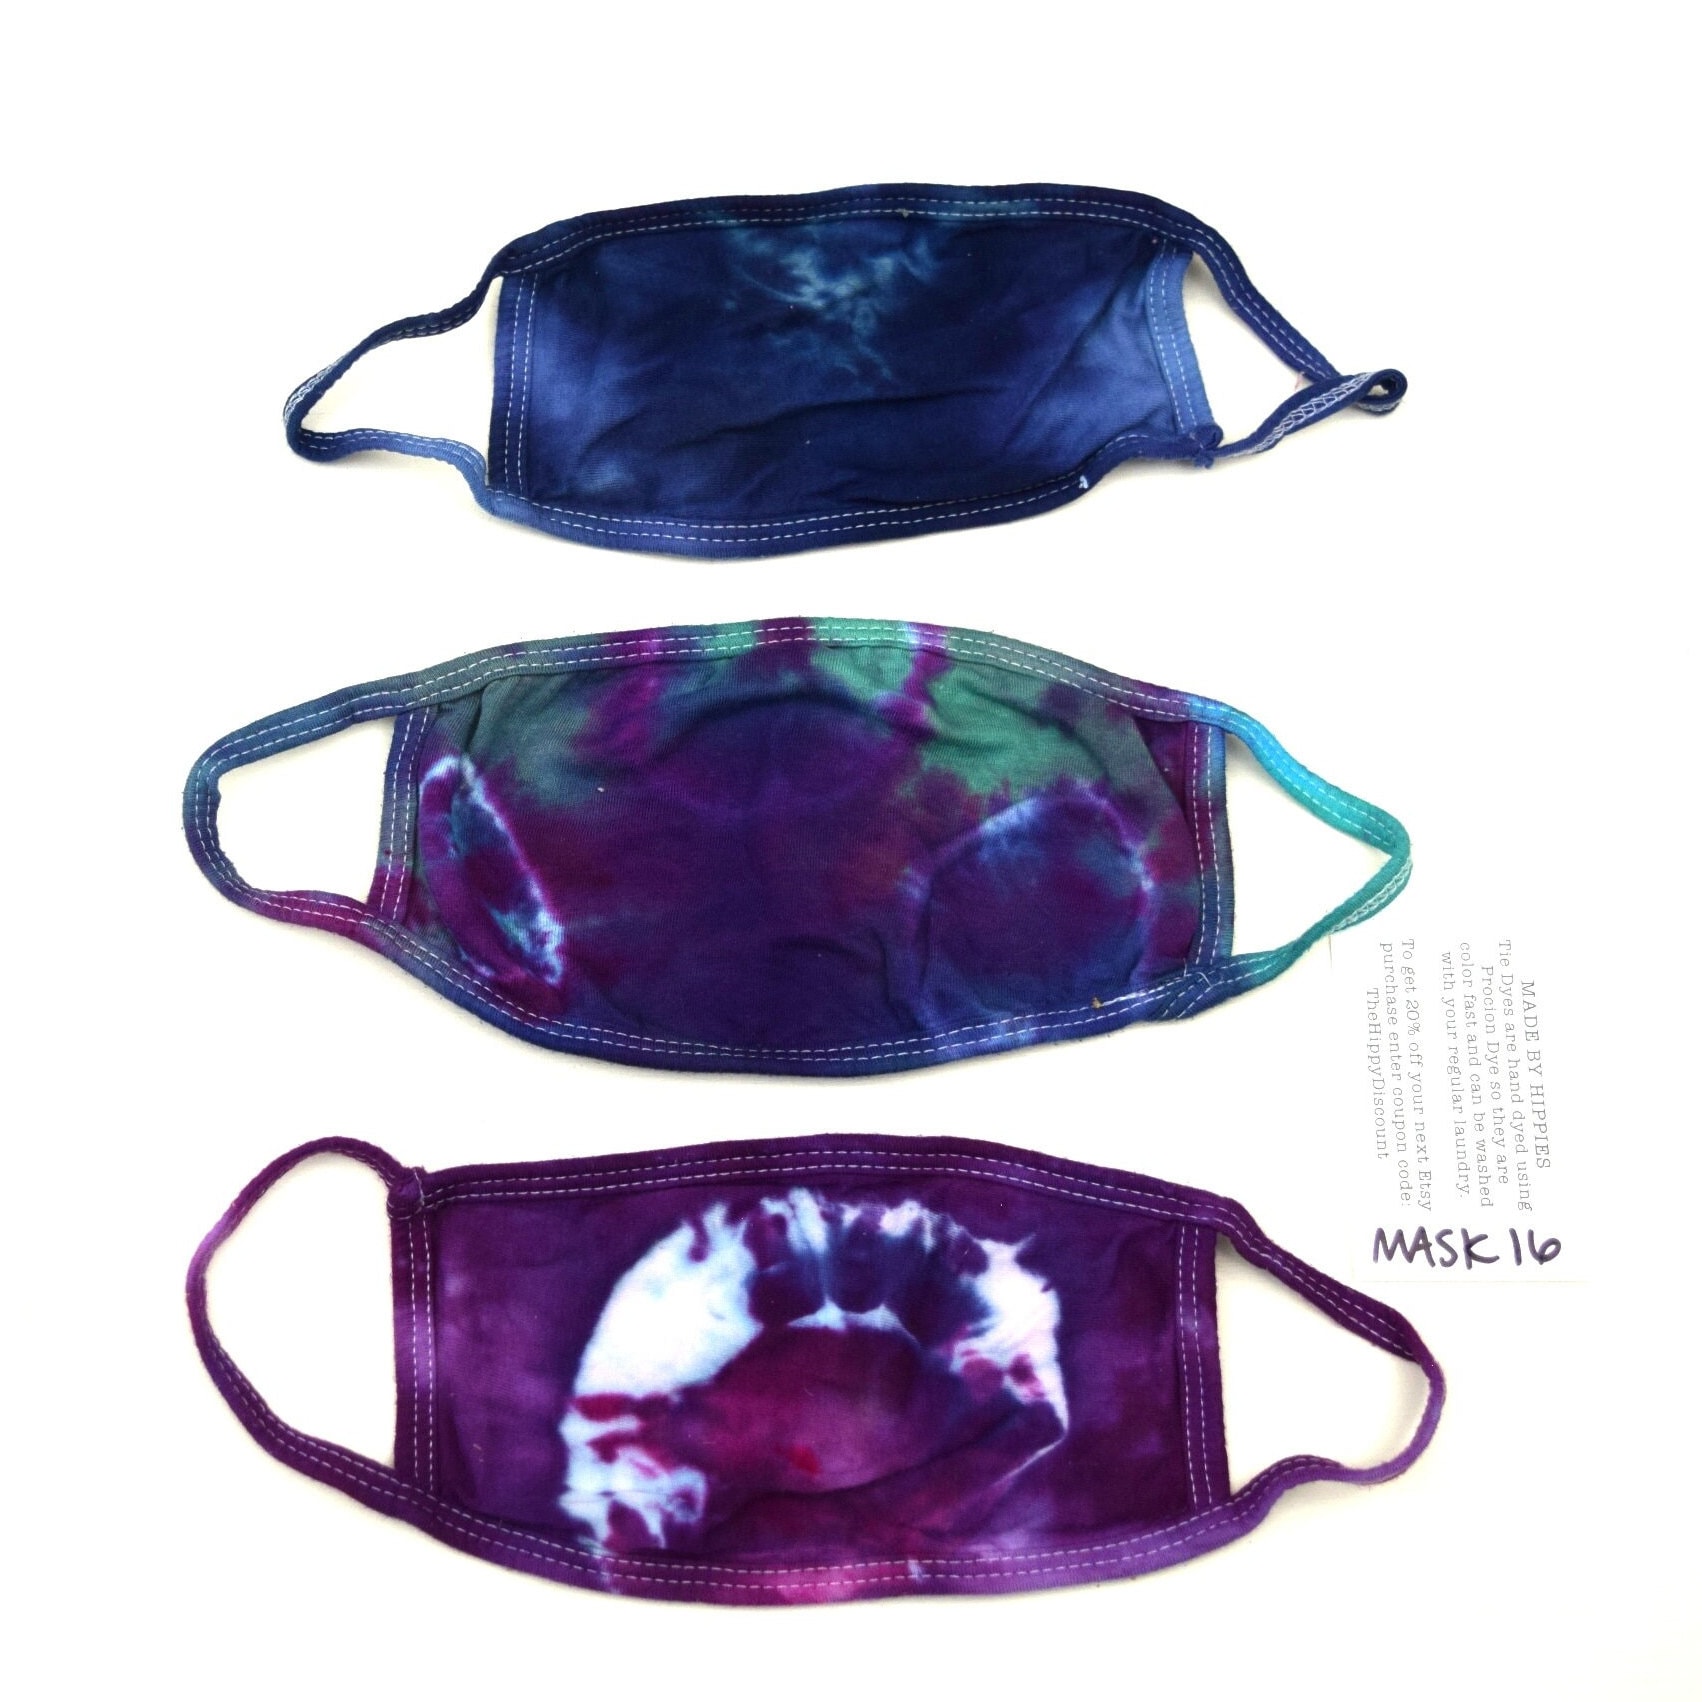 Maskenpackung #16 ~ 3Er Set Ice Tie Dye Masken Erwachsene Klein | 2 Lagen Baumwolle Jersey Maske Stoff Earloops Dehnbar, Nicht Verstellbar Lila Grün von madebyhippies